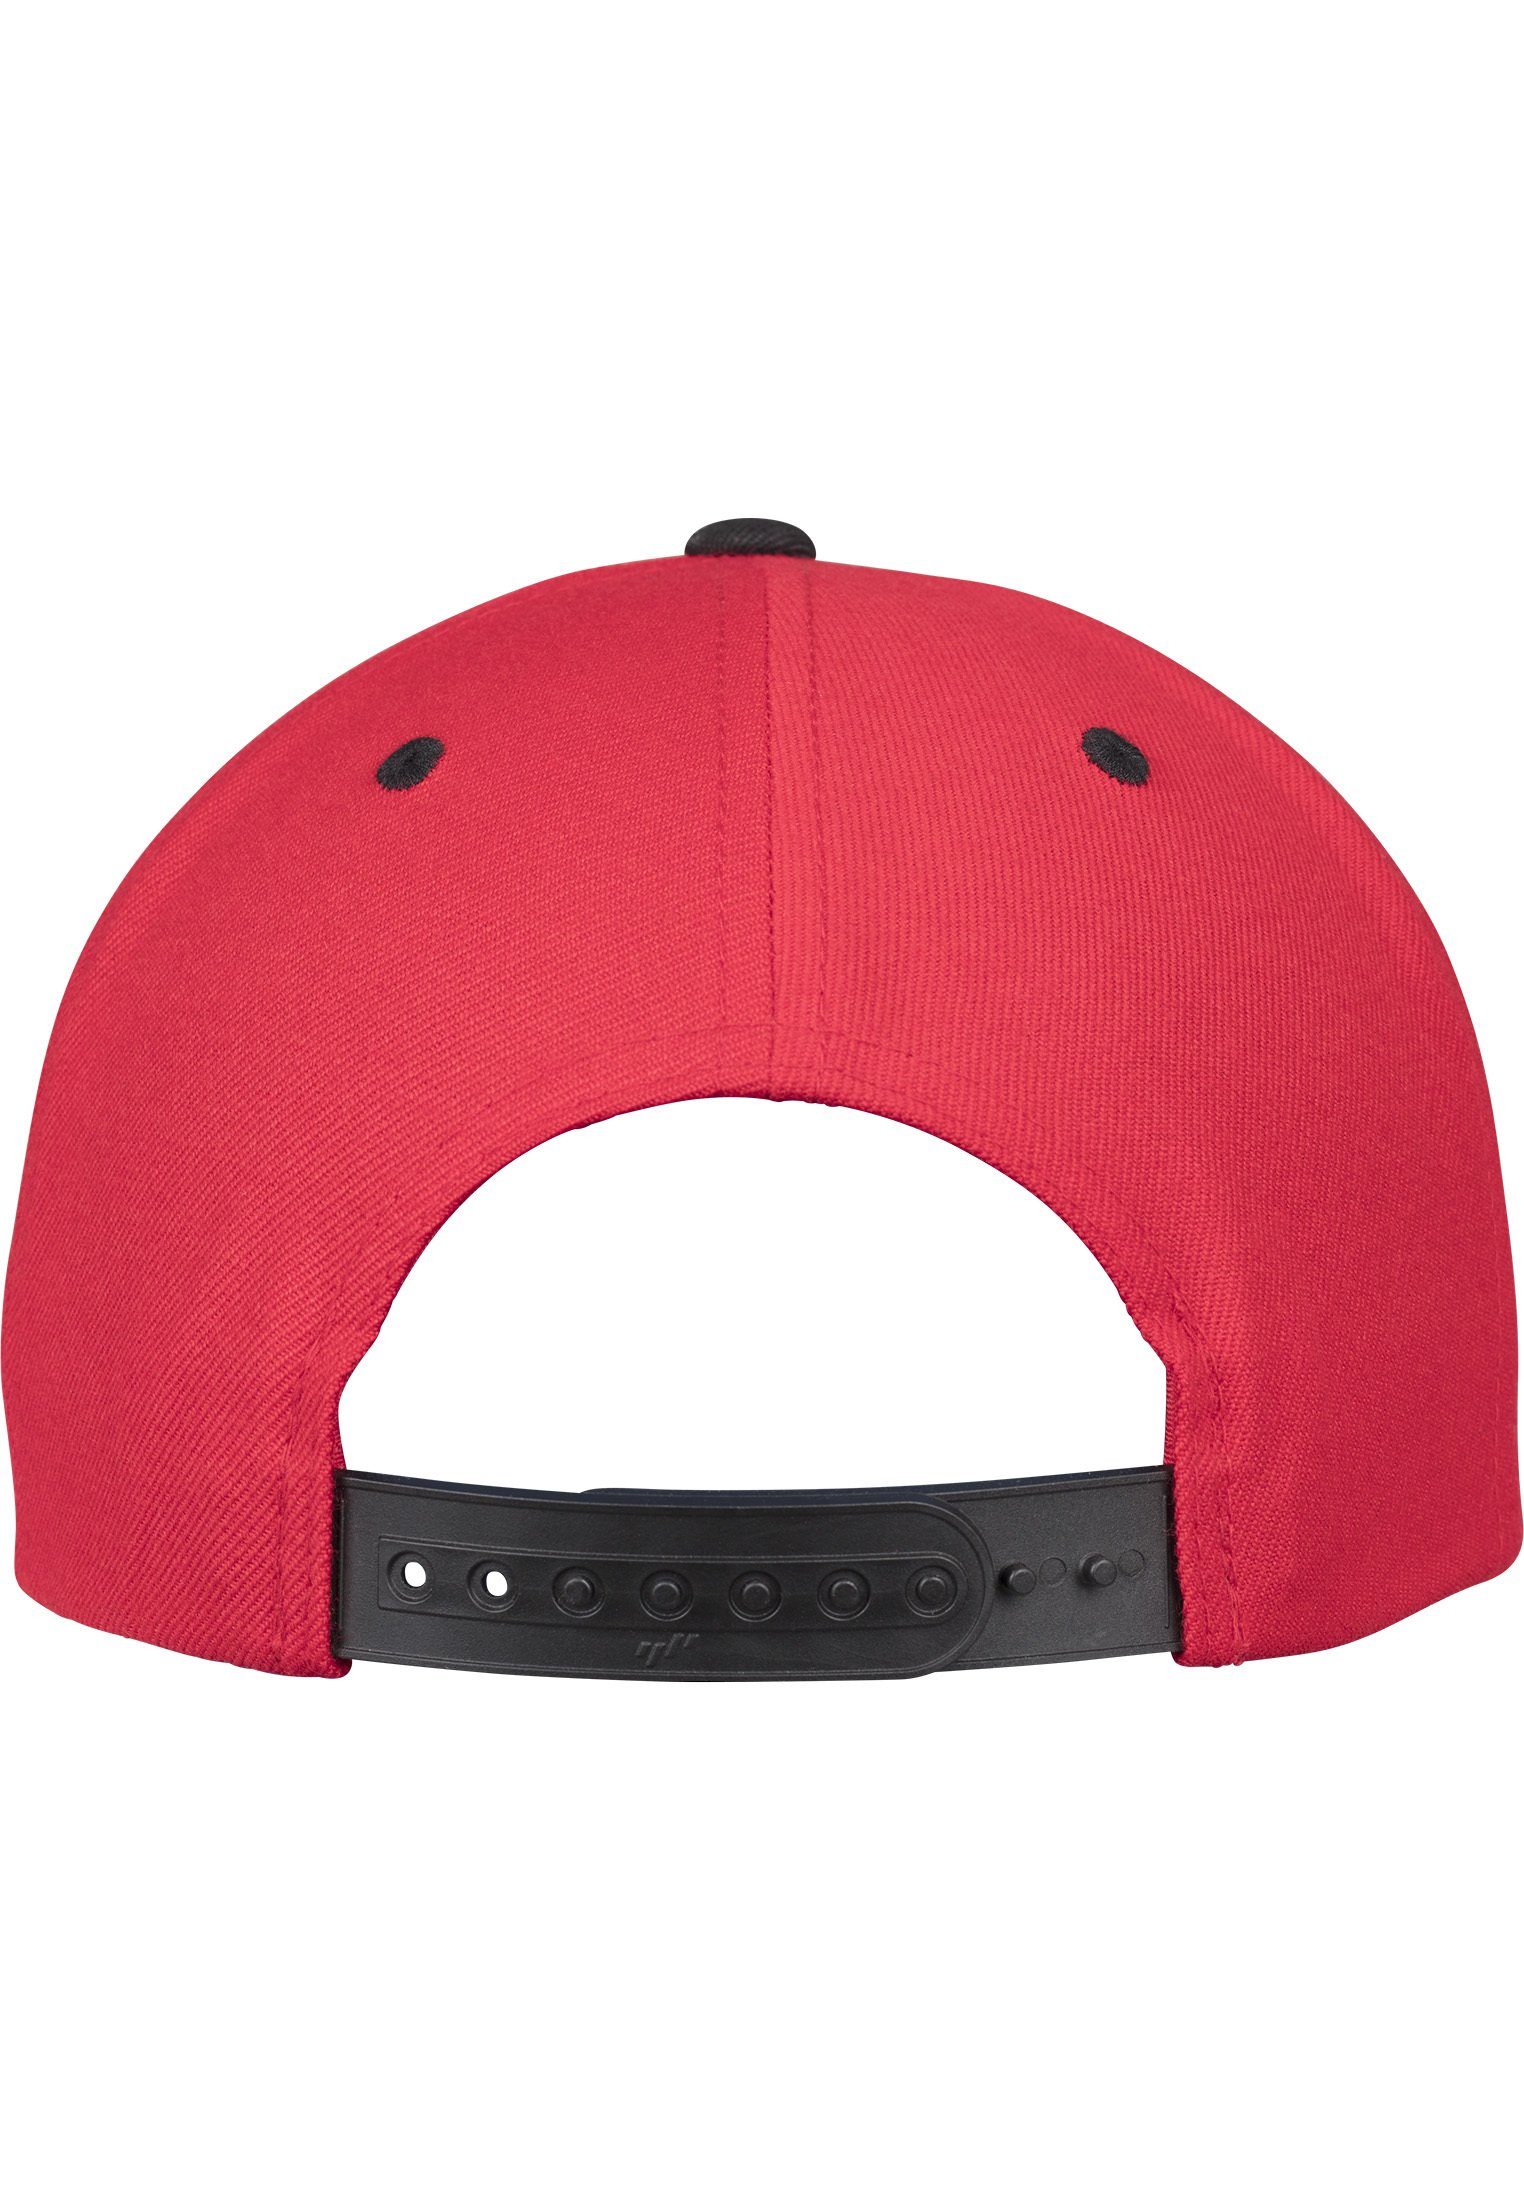 Flexfit Cap Snapback Snapback Classic red/black Flex 2-Tone